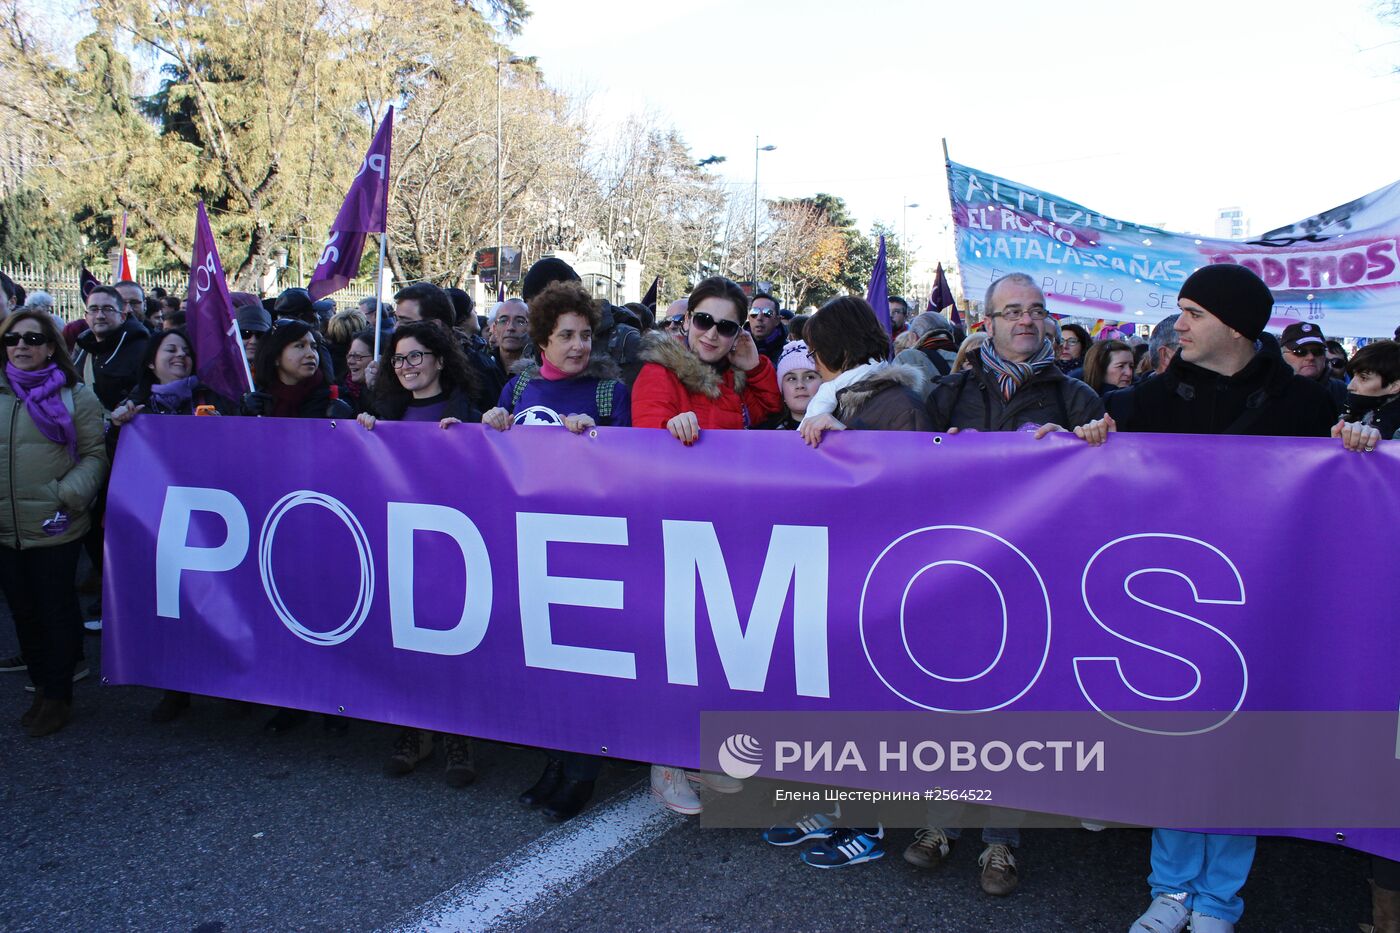 Массовая акция протеста левой оппозиции прошла в Мадриде